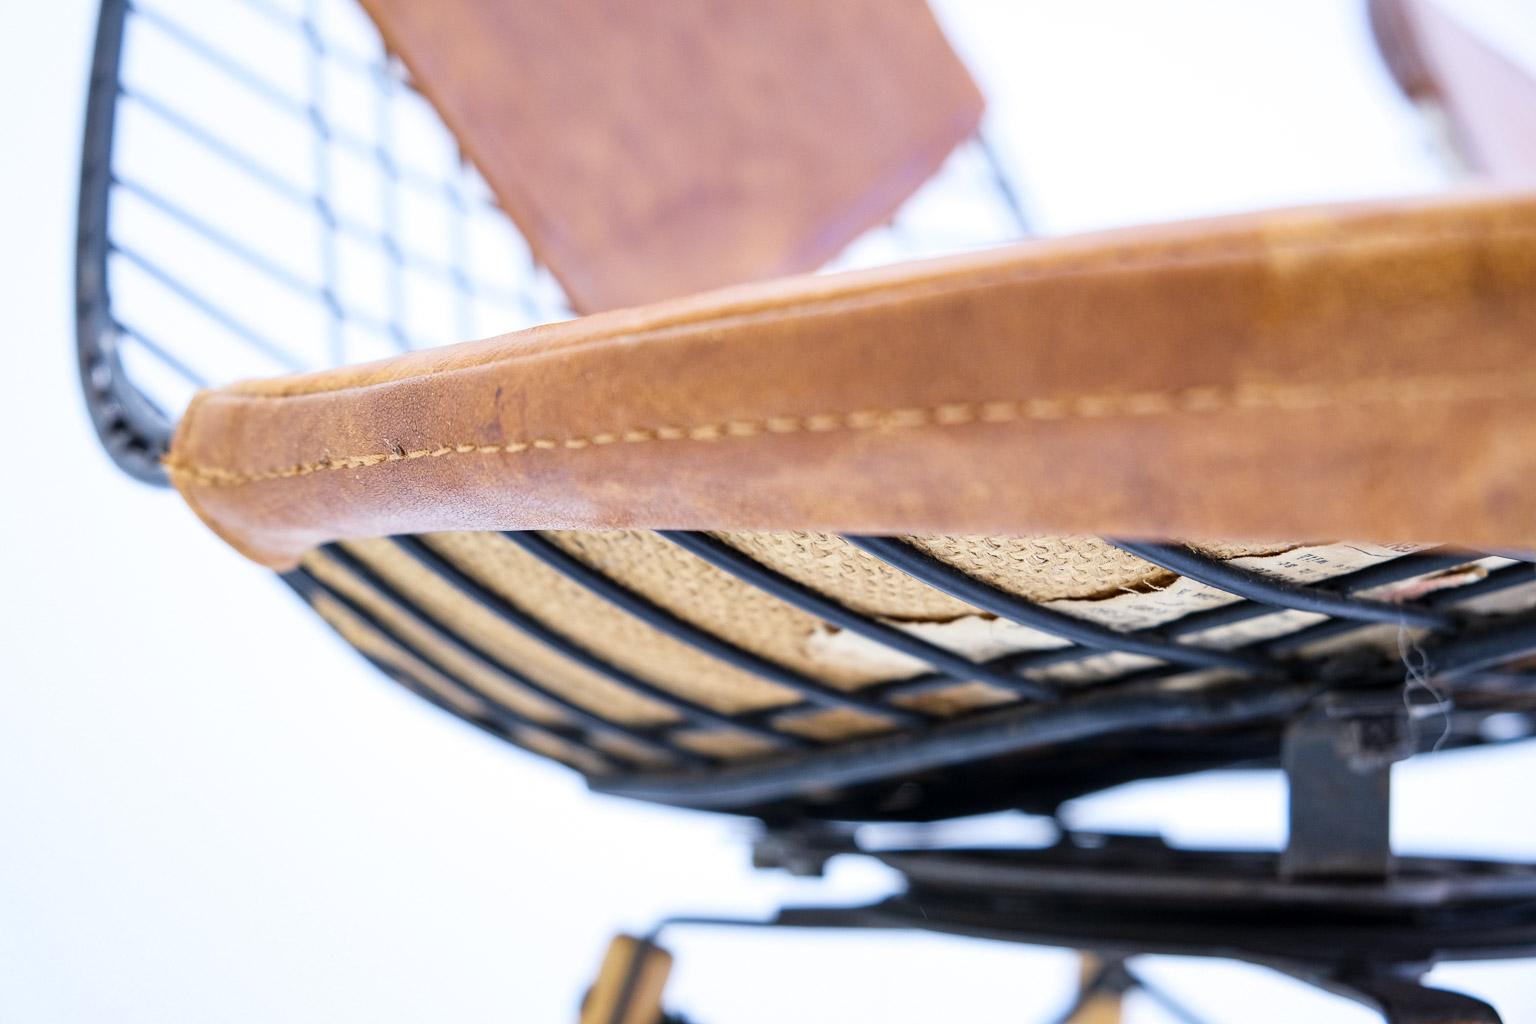 Pkw-2 Pivoting K-Wire Wood Base Side Chair, Eames Herman Miller, Bikini, Seng For Sale 7